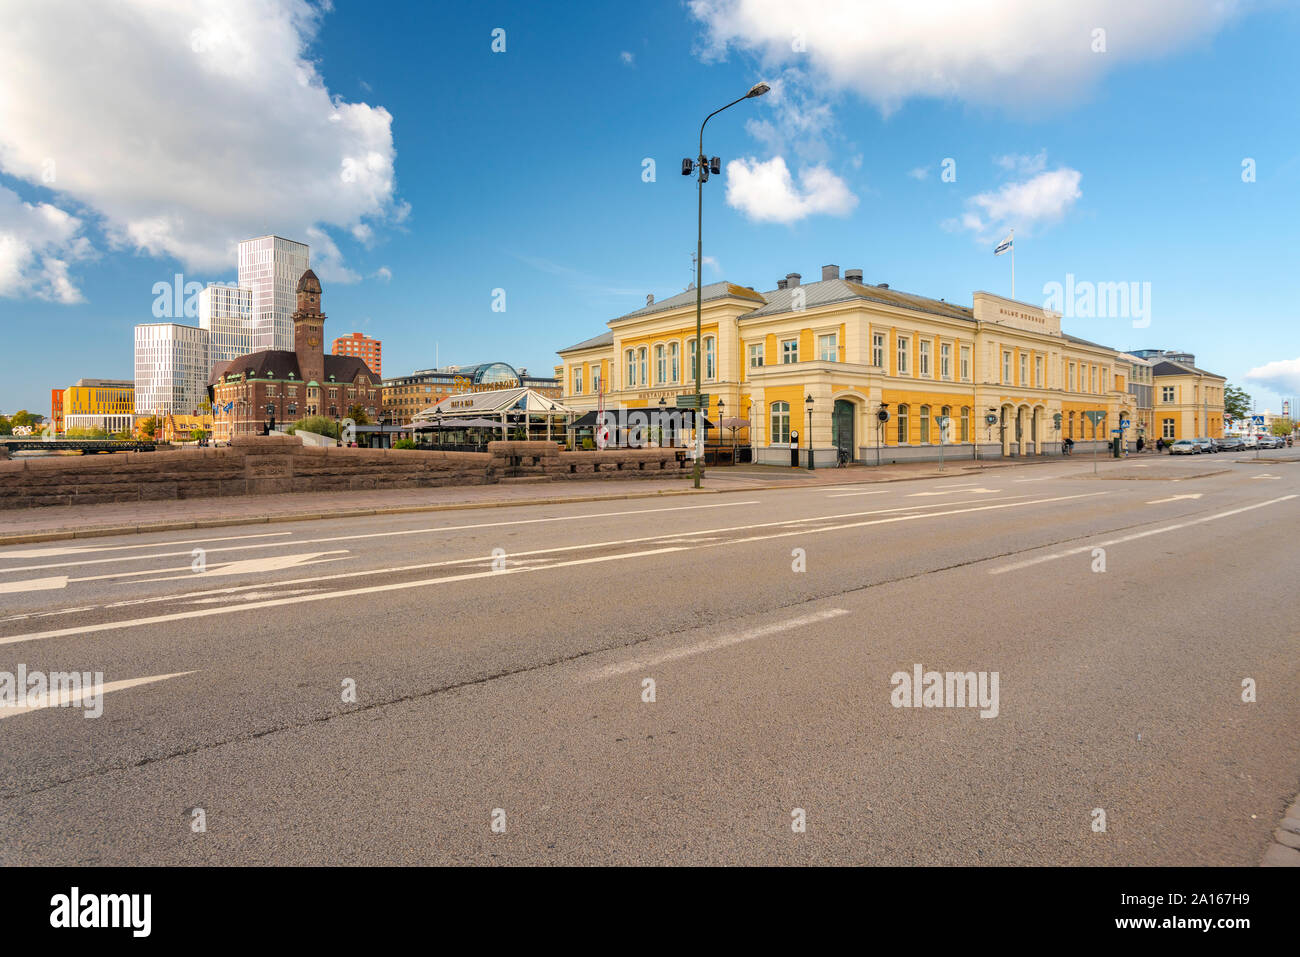 Sweden, Malmo, Town center Stock Photo